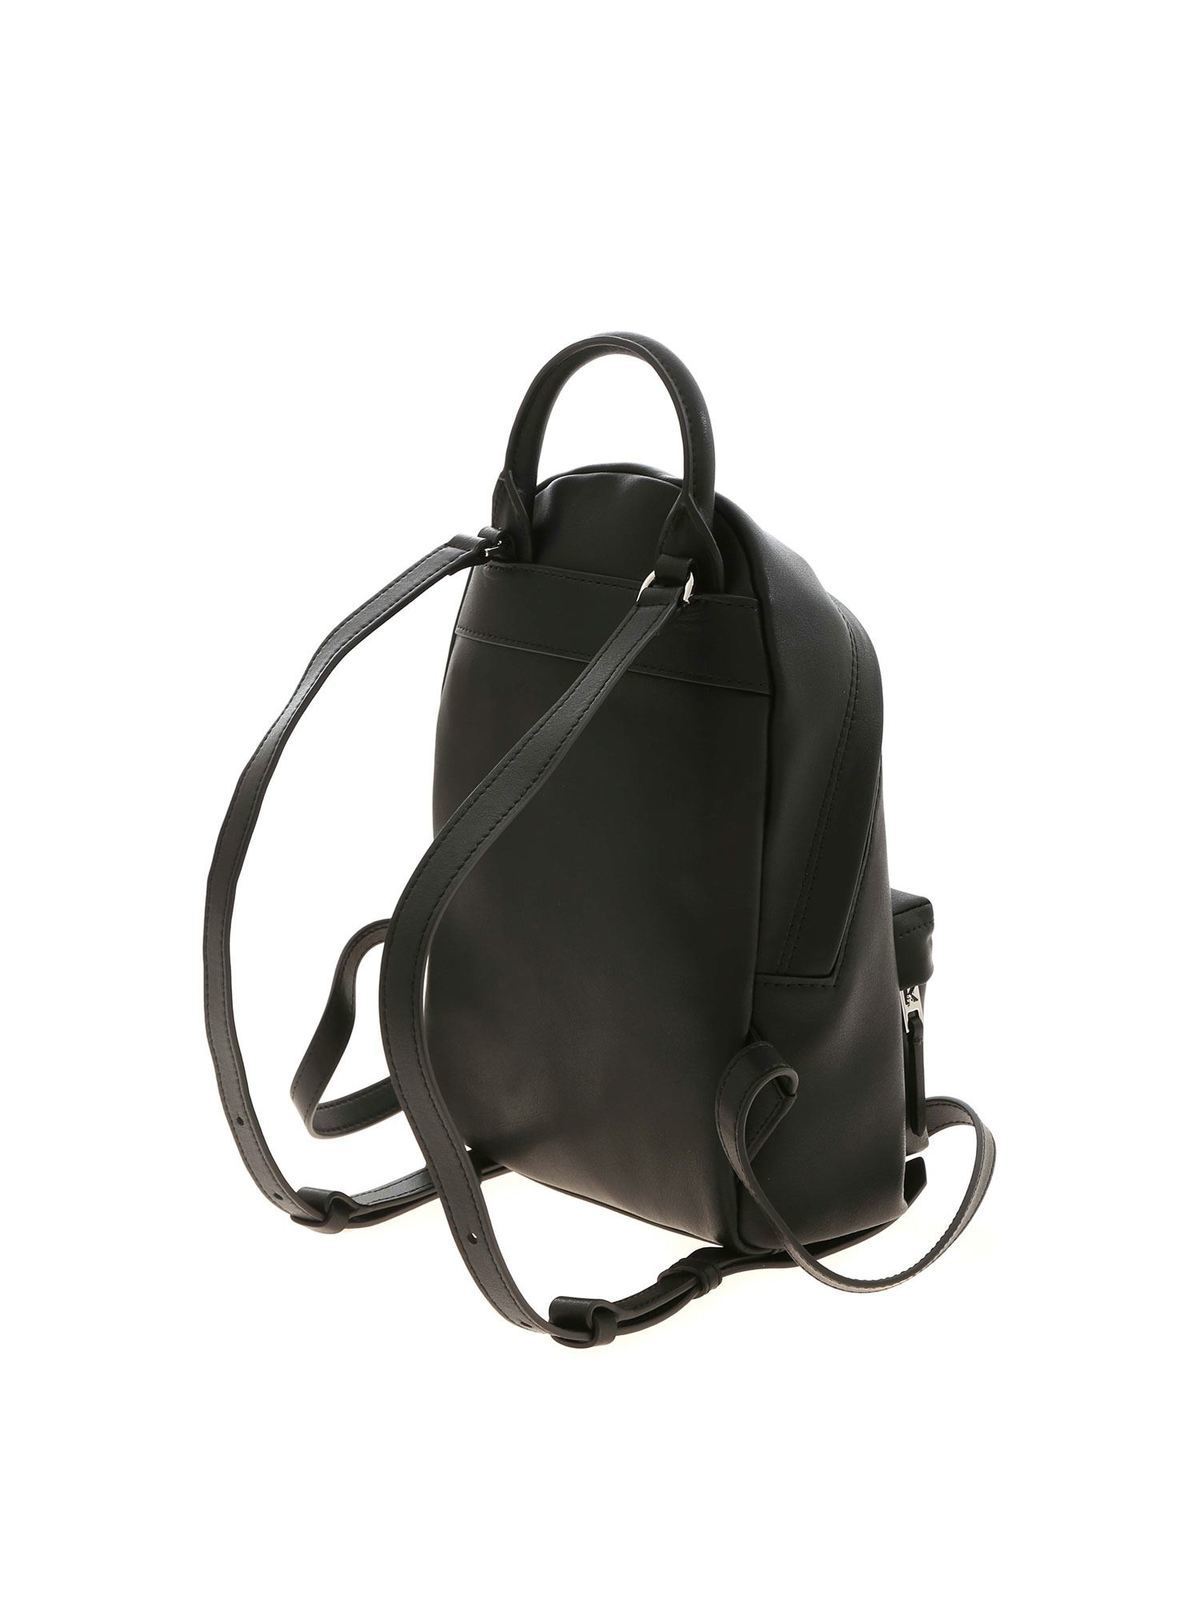 Backpacks Karl Lagerfeld - K/Ikonik Metal Pin backpack in black -  205W3090BLACK